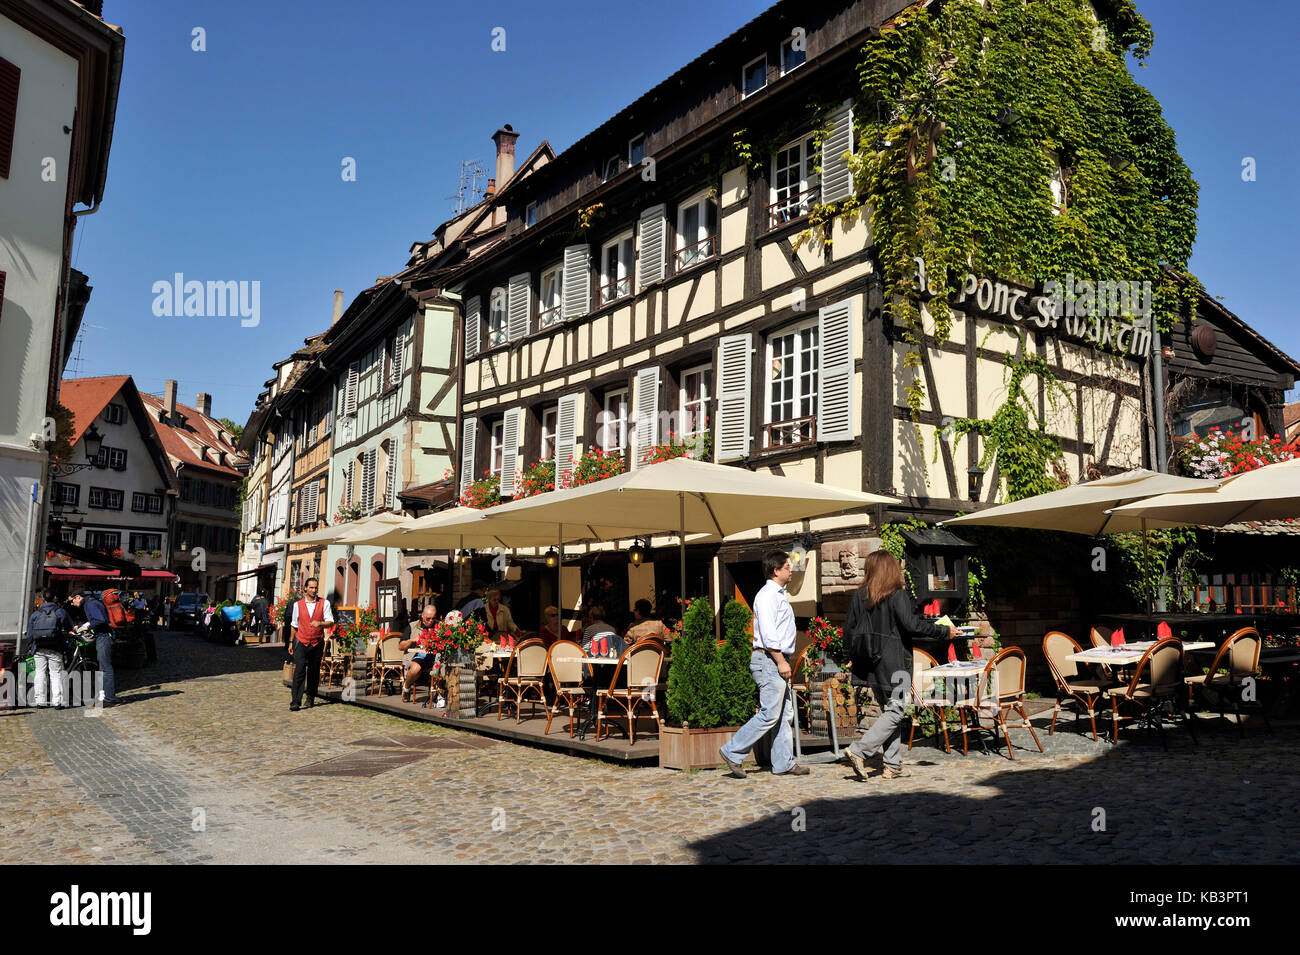 Francia, BAS RHIN, Strasburgo, città vecchia sono classificati come patrimonio mondiale dall'UNESCO, dal quartiere Petite France, ristorante au pont st-martin Foto Stock